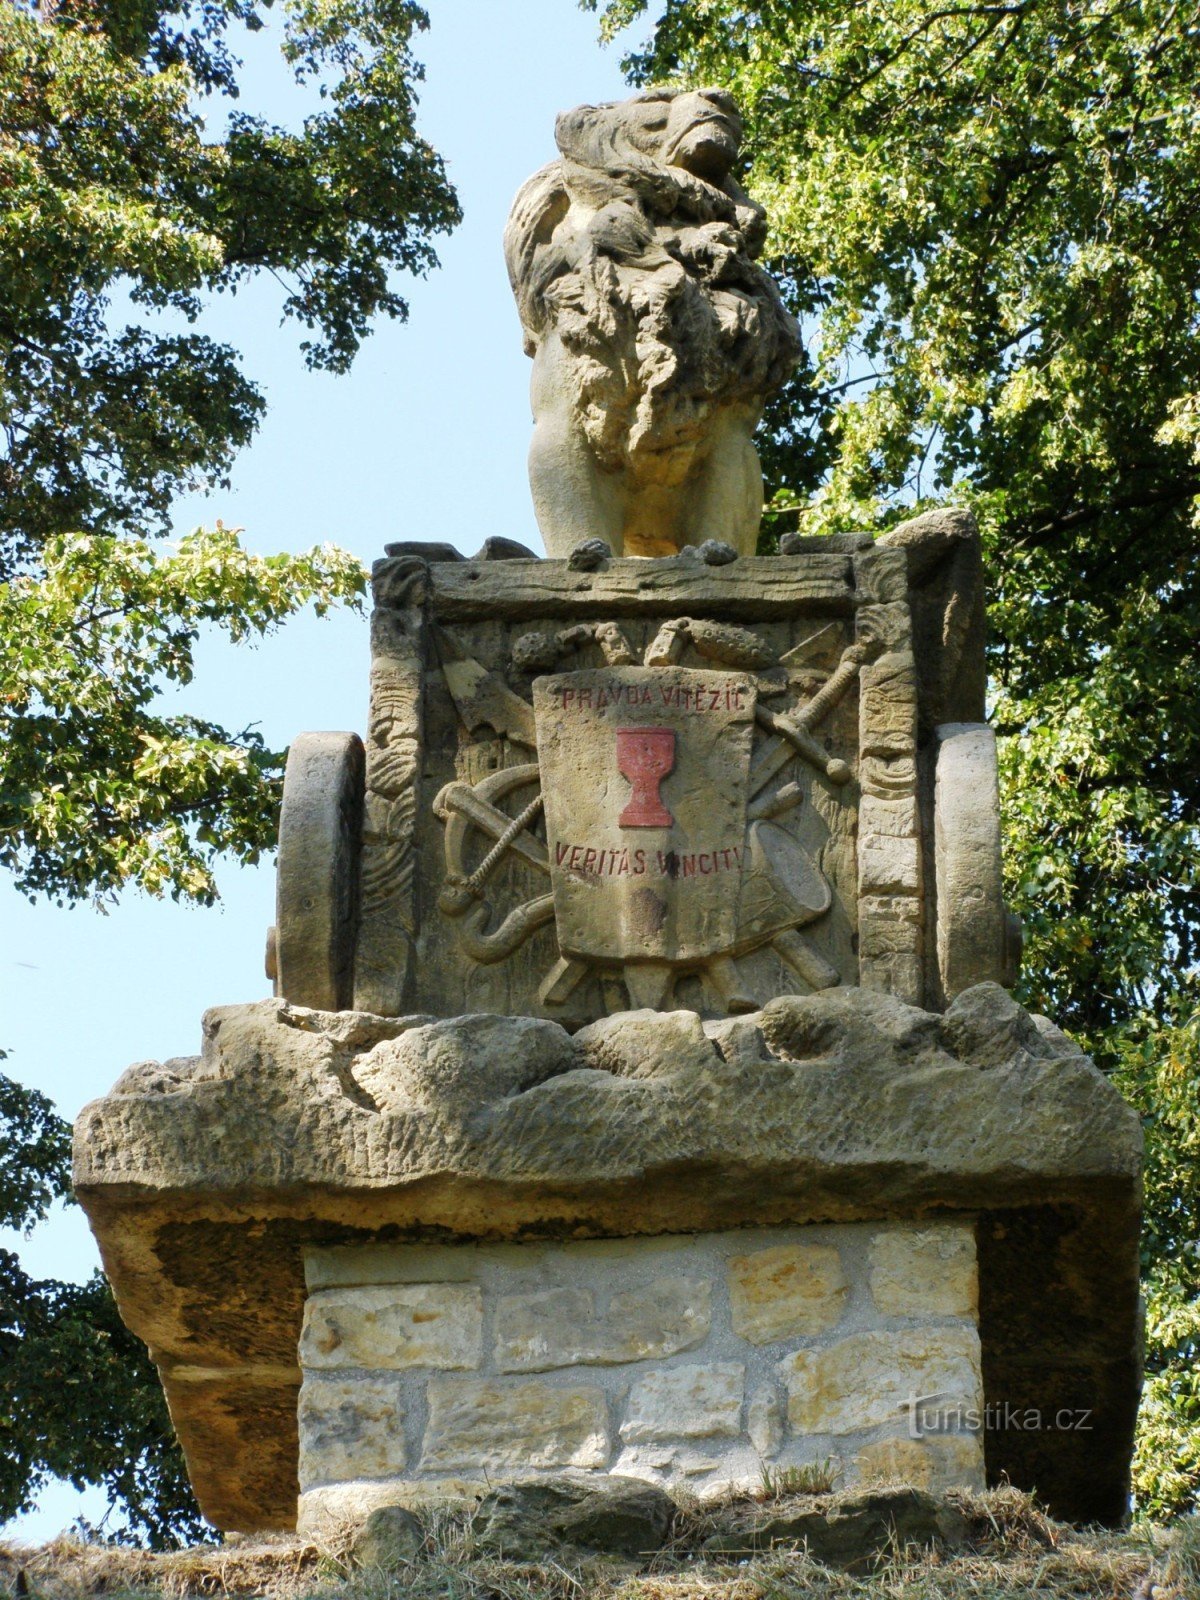 Hořice - Mohejlík, Hussite mound